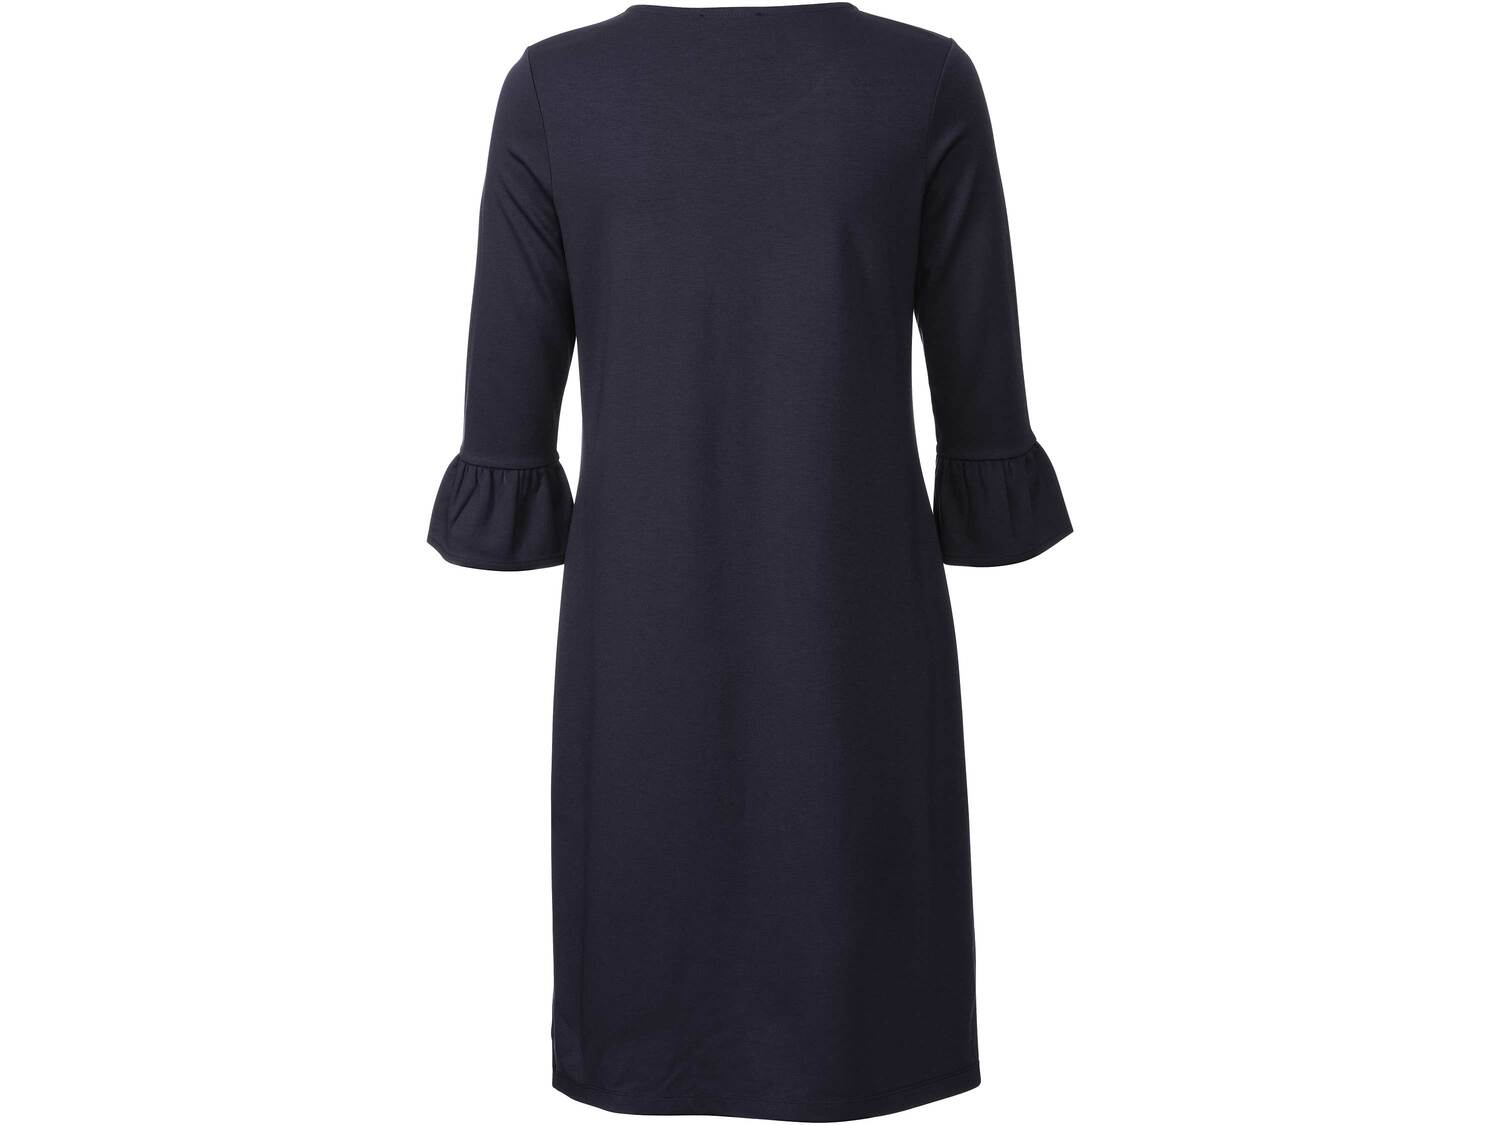 Sukienka damska z wiskozą Esmara, cena 39,99 PLN 
- rozmiary: XS-L
- optymalne ...